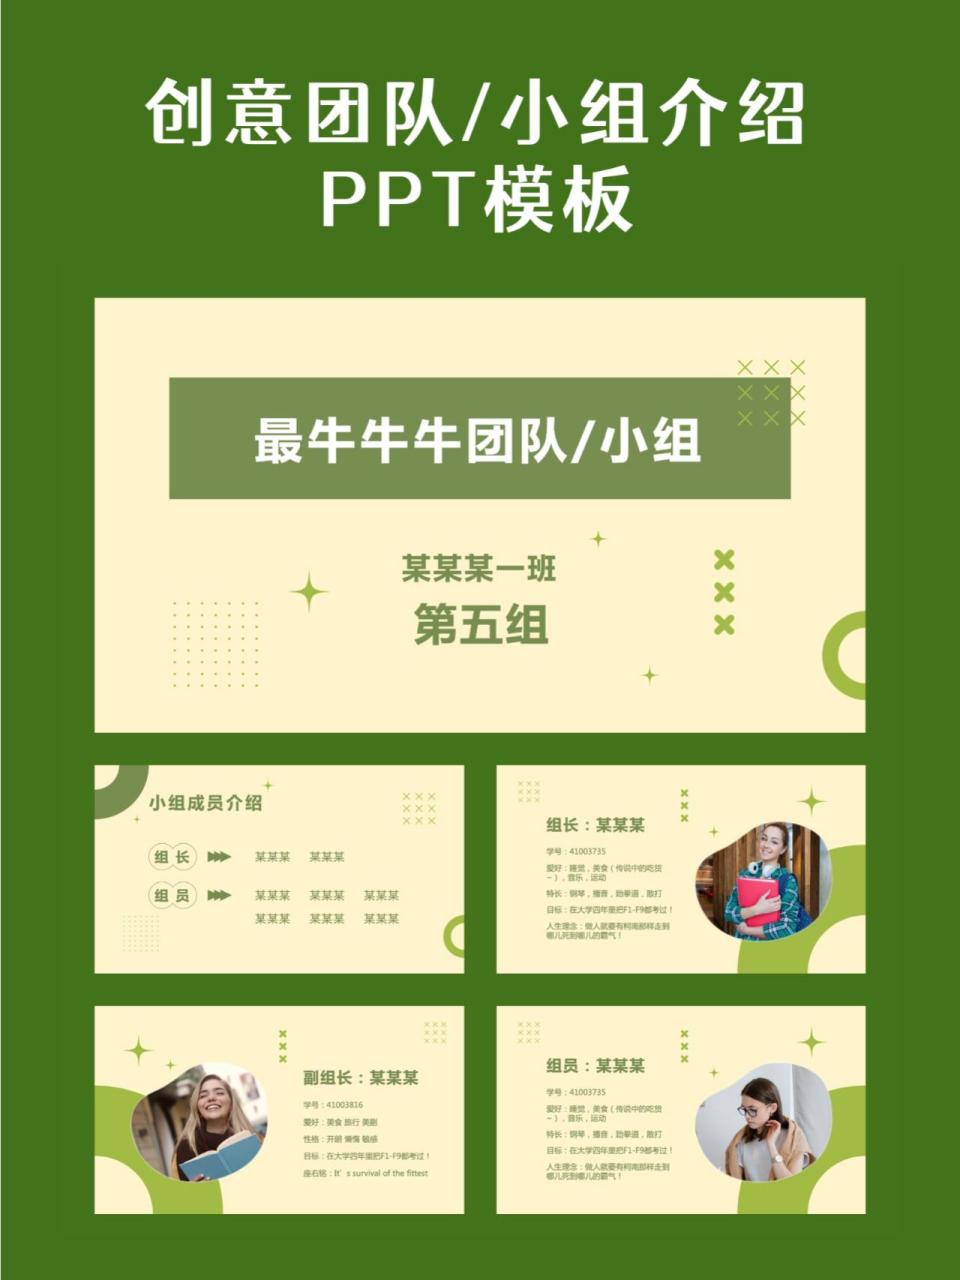 介绍小组成员的ppt模板图片